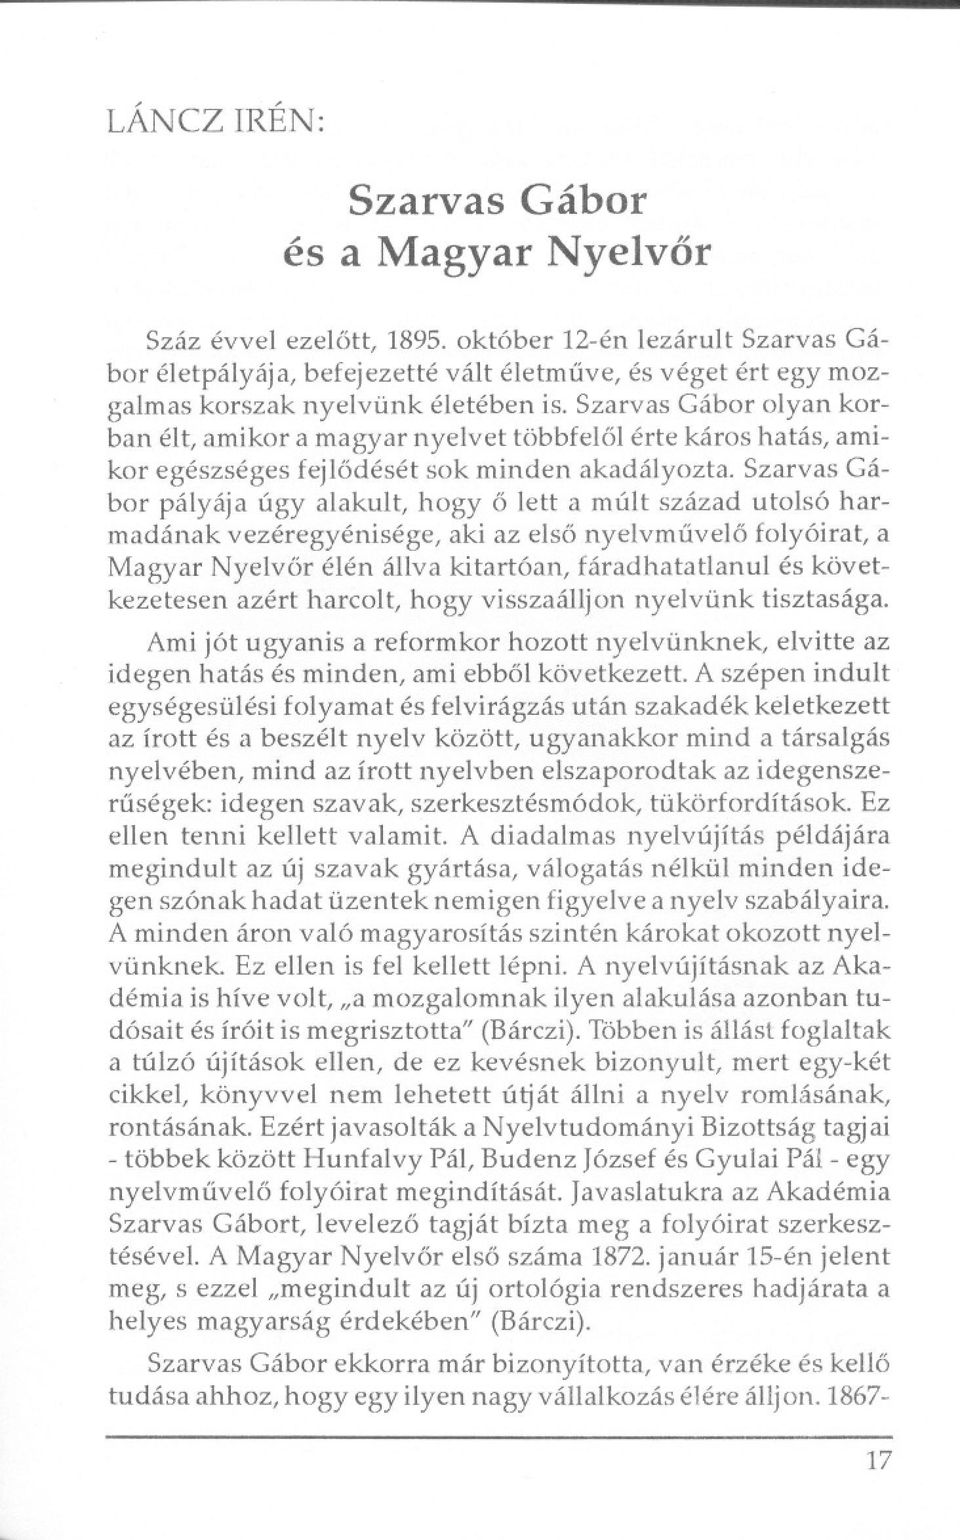 Szarvas Gábor olyan karban élt, amikor a magyar nyelvet többfelol érte káros hatás, amikor egészséges fejlodését sok minden akadályozta.